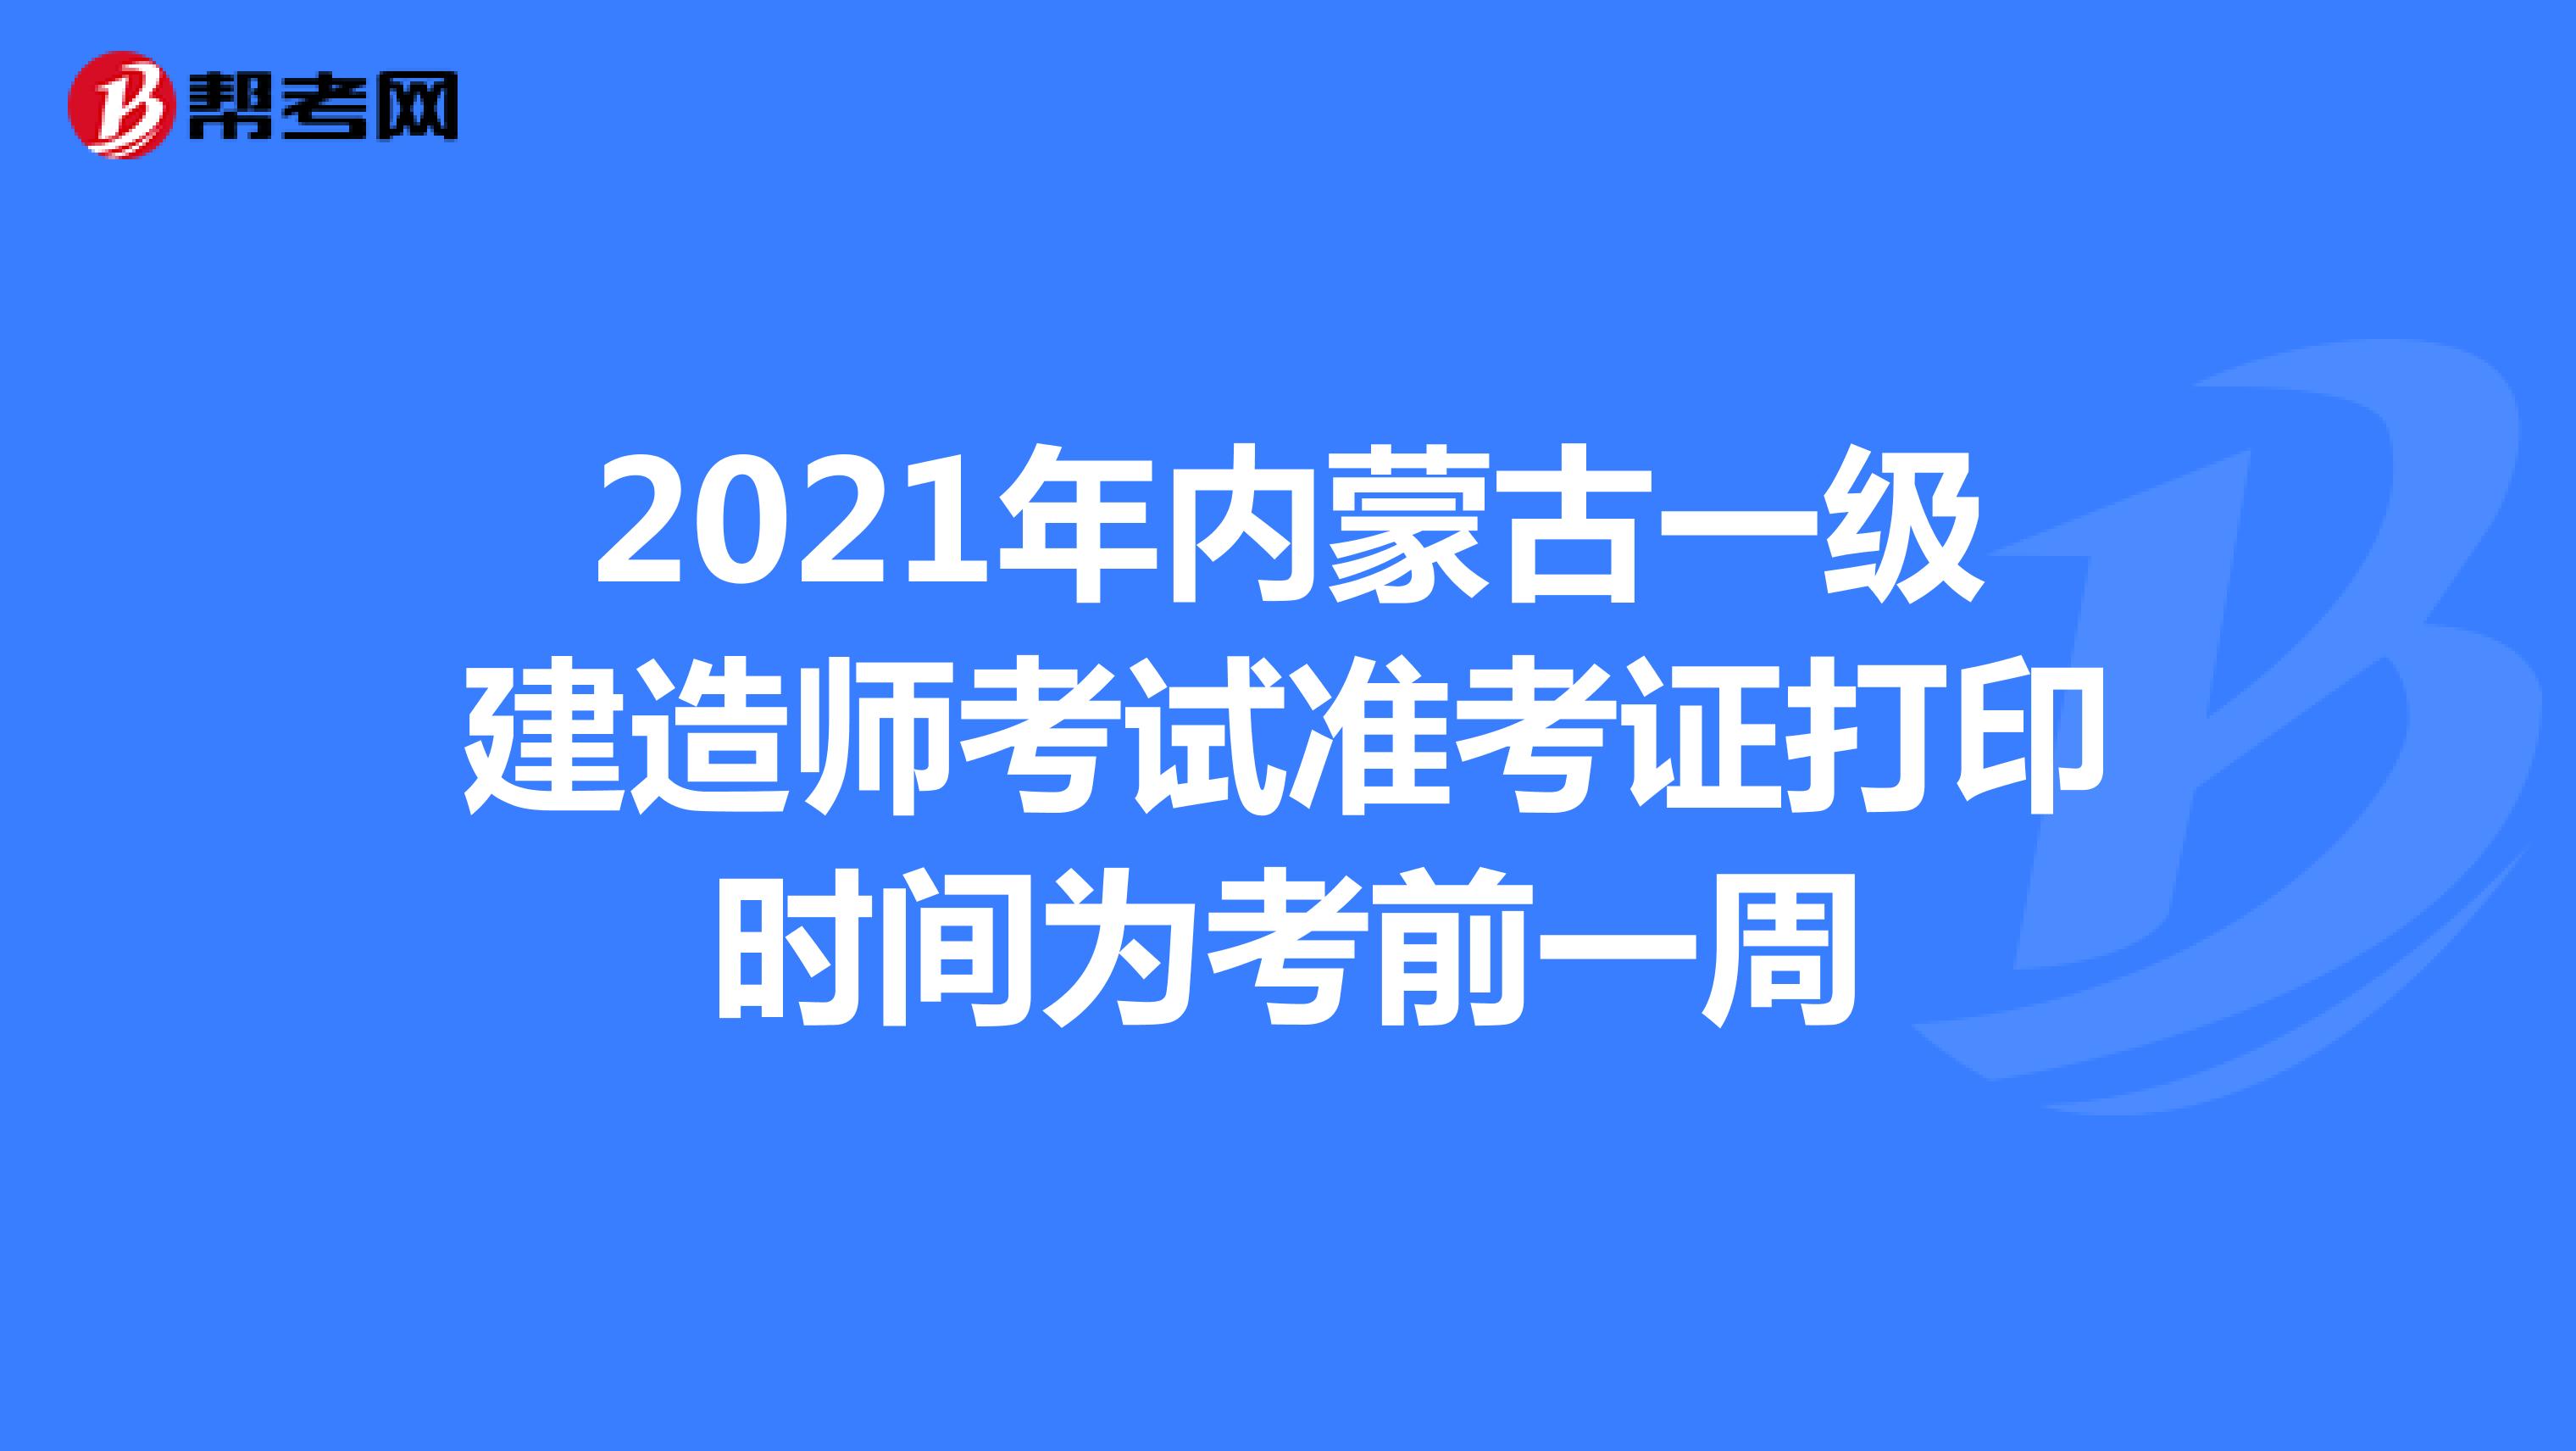 2021年内蒙古一级建造师考试准考证打印时间为考前一周